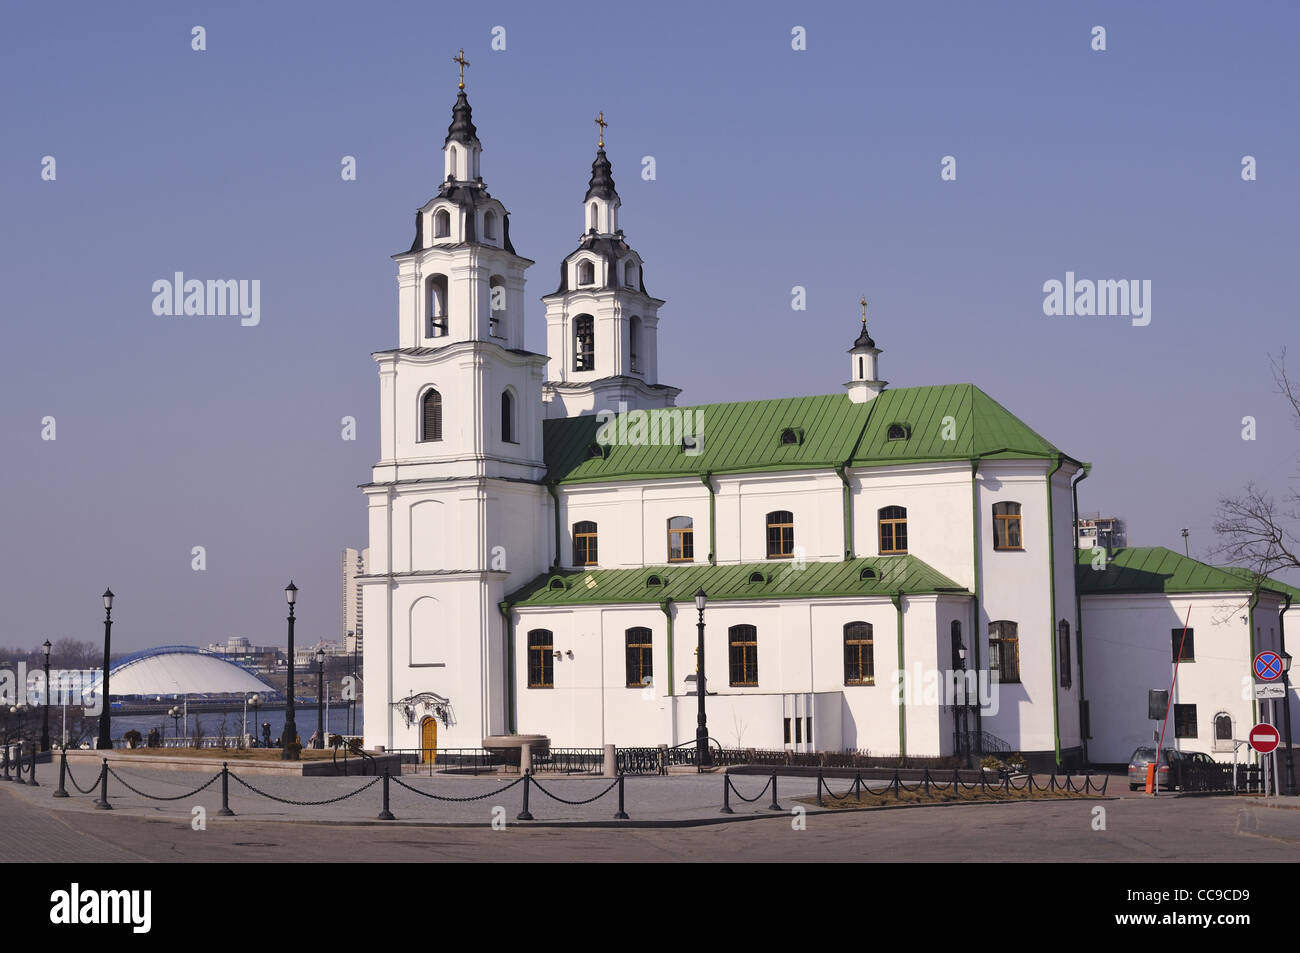 Vue latérale de la cathédrale Saint Esprit à Minsk, Bélarus Banque D'Images